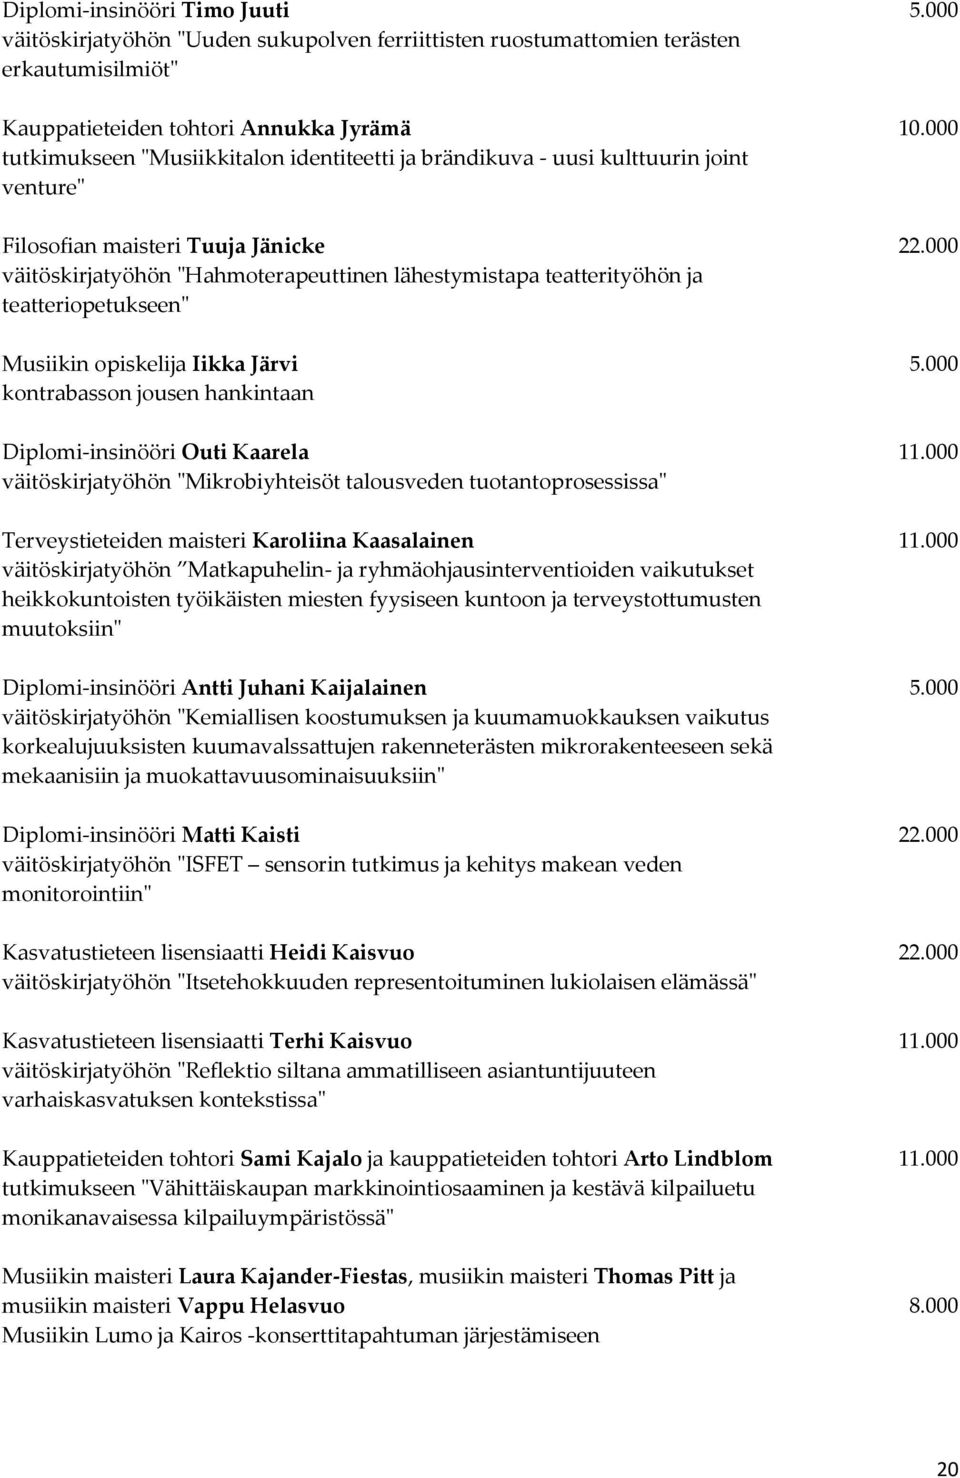 000 väitöskirjatyöhön "Hahmoterapeuttinen lähestymistapa teatterityöhön ja teatteriopetukseen" Musiikin opiskelija Iikka Järvi 5.000 kontrabasson jousen hankintaan Diplomi-insinööri Outi Kaarela 11.